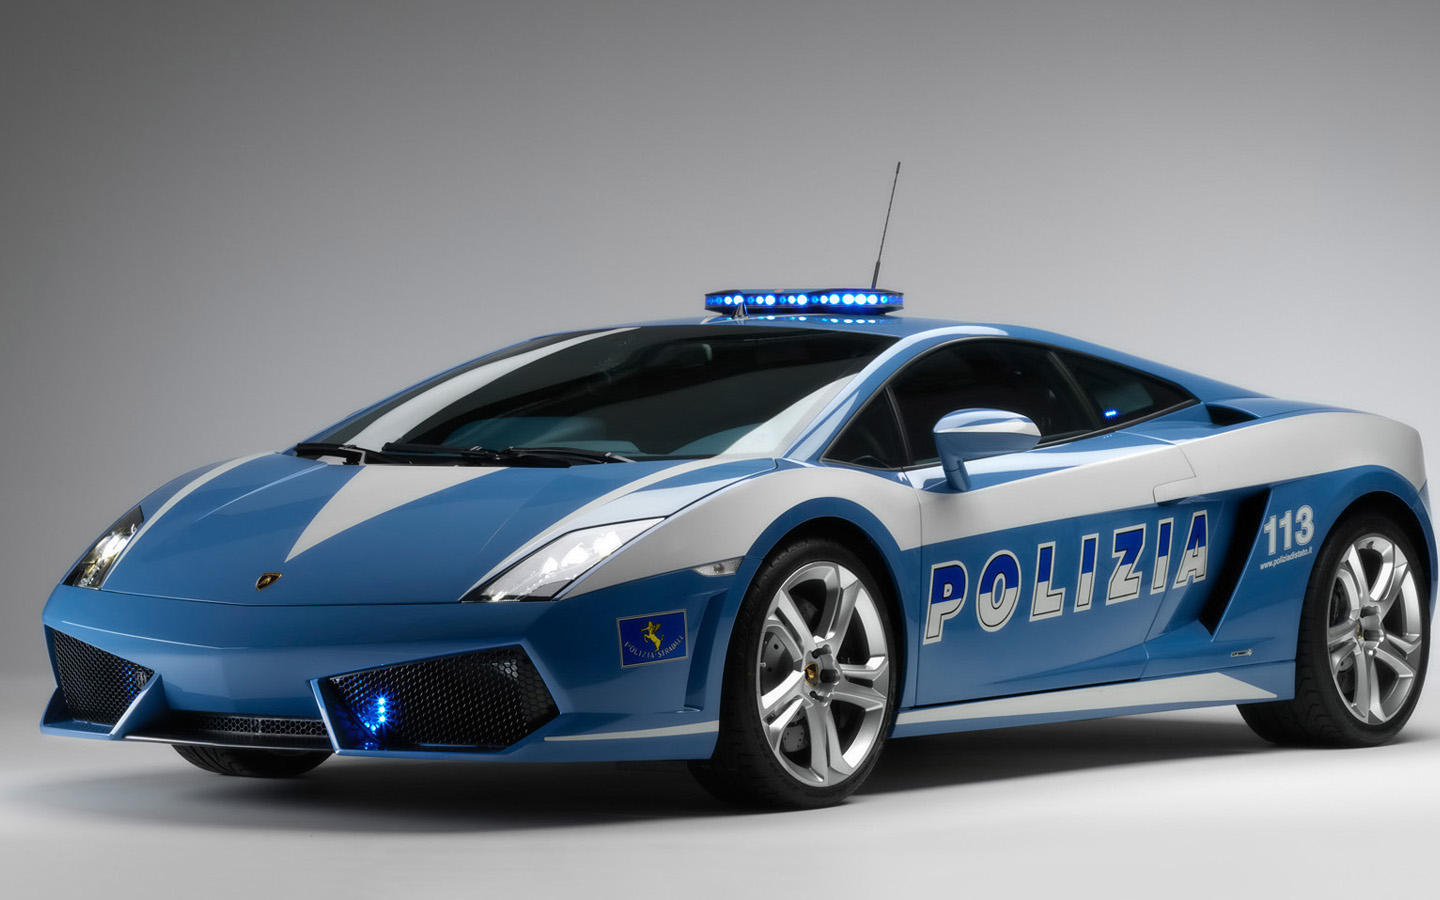 2009 Lamborghini Gallardo LP560 Police Car Wallpapers HD Wallpapers